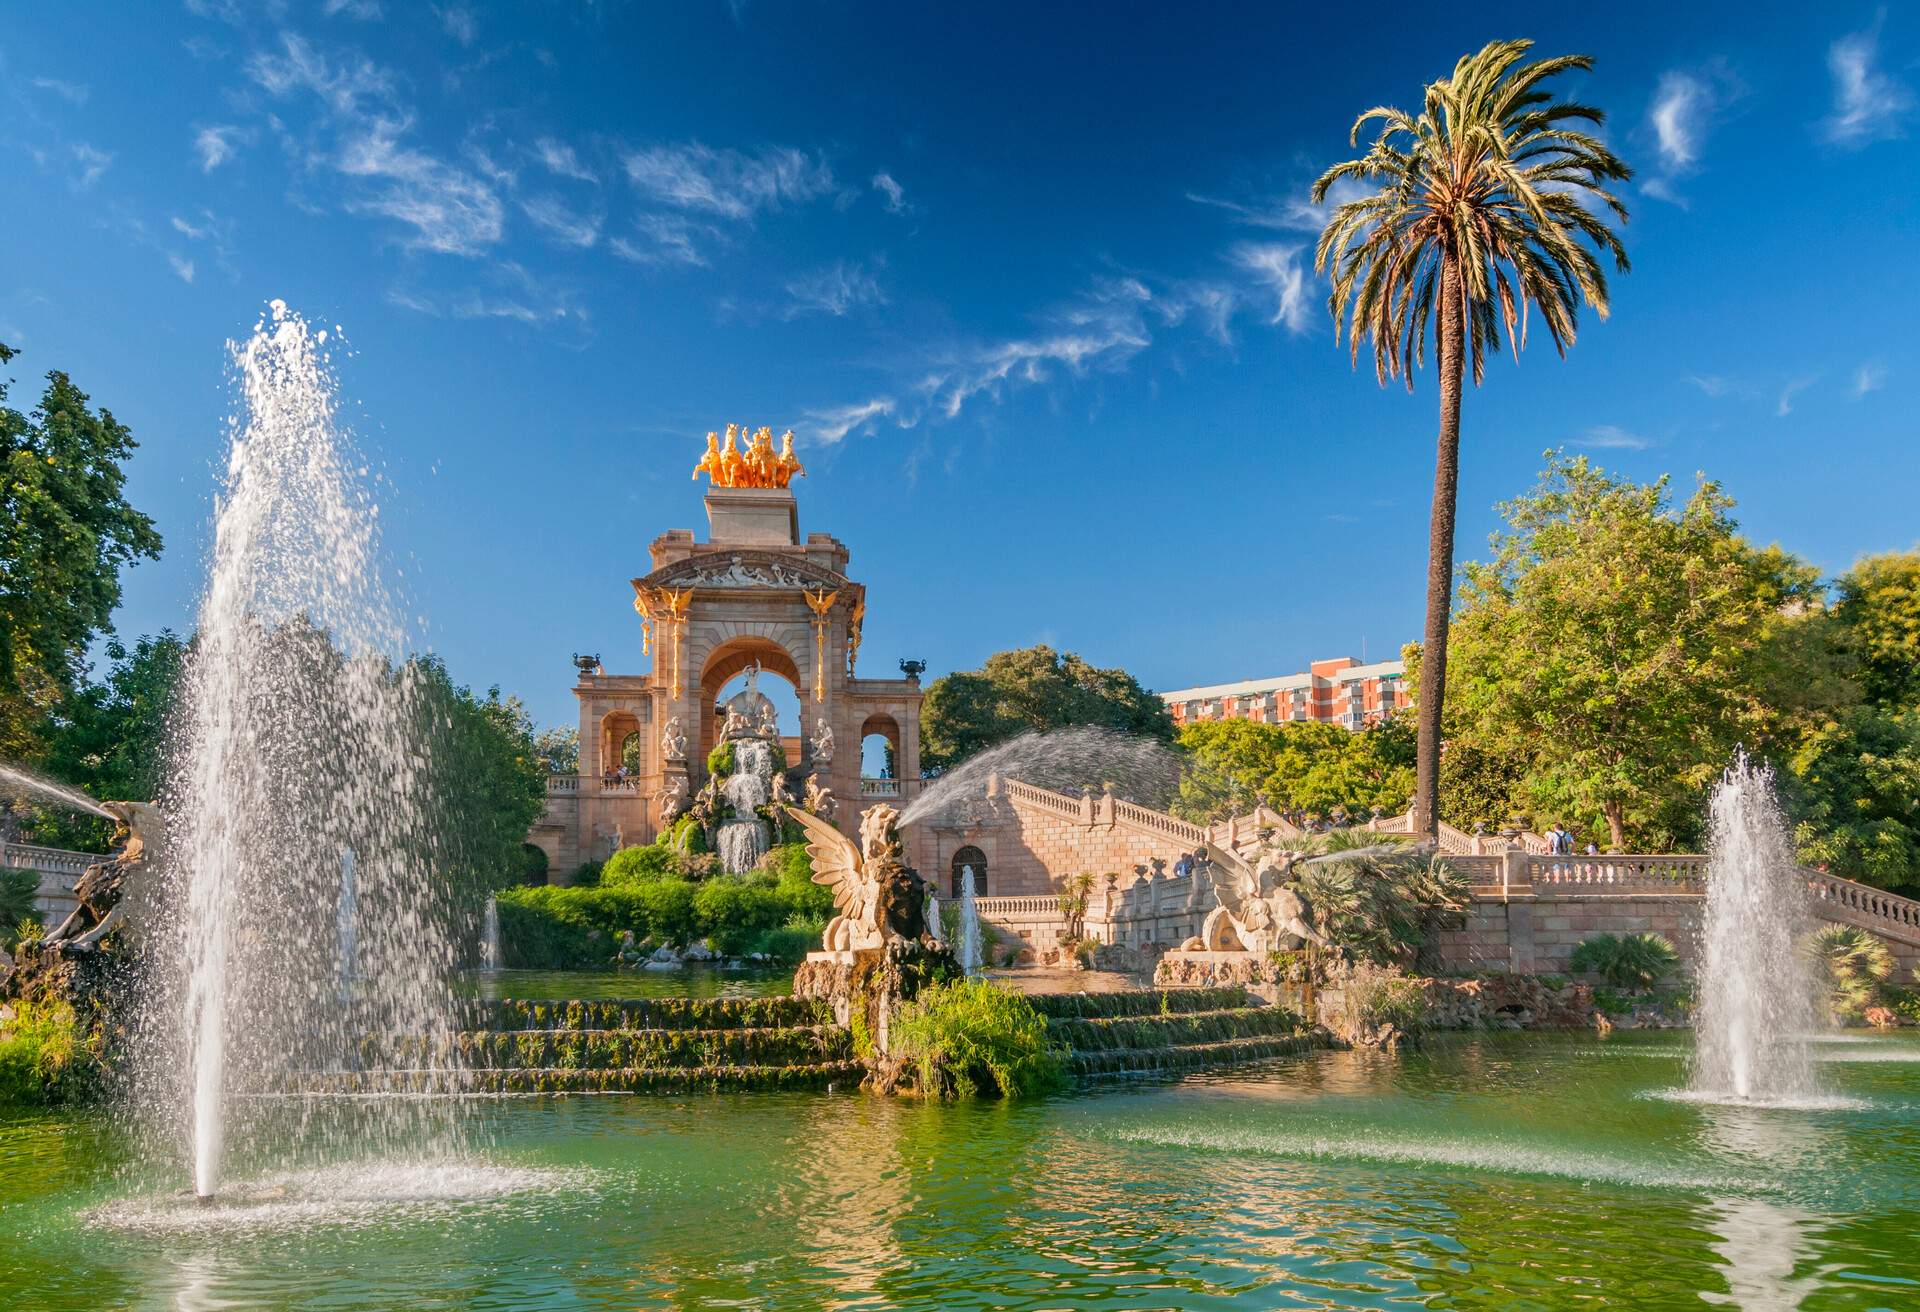 DEST_SPAIN_BARCELONA_Fountain